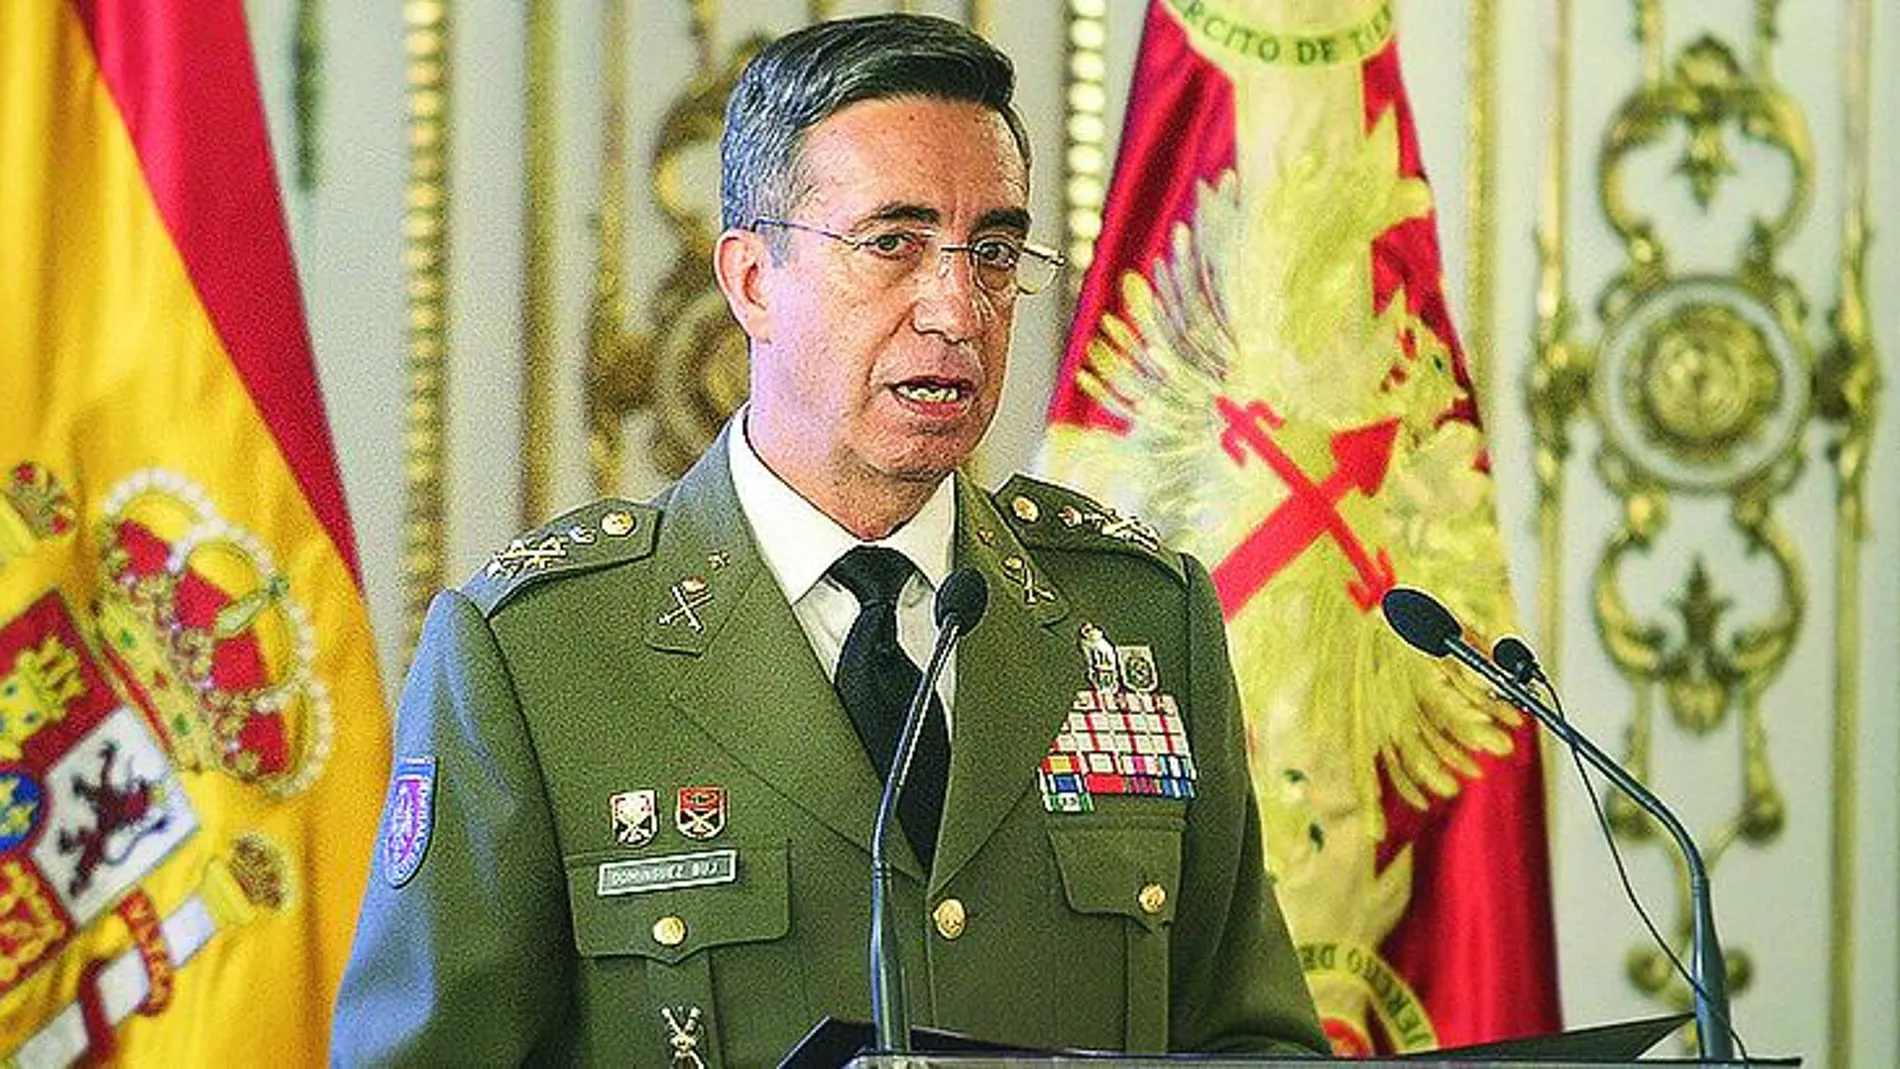 El jefe de Estado Mayor del Ejército, el general Jaime Domínguez Buj